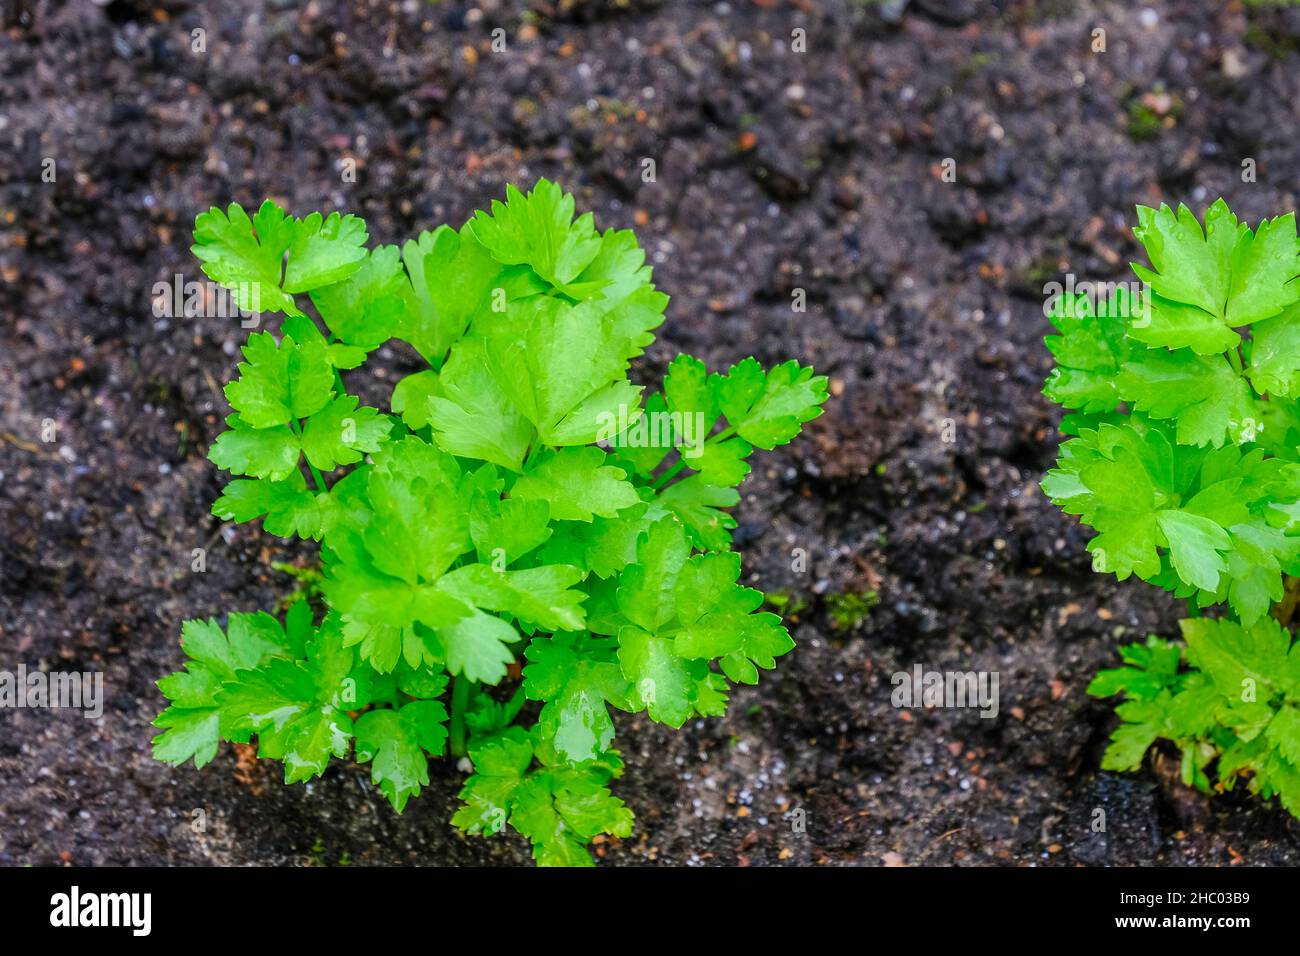 Jeune plante de céleri après avoir planté des semis dans le sol Banque D'Images